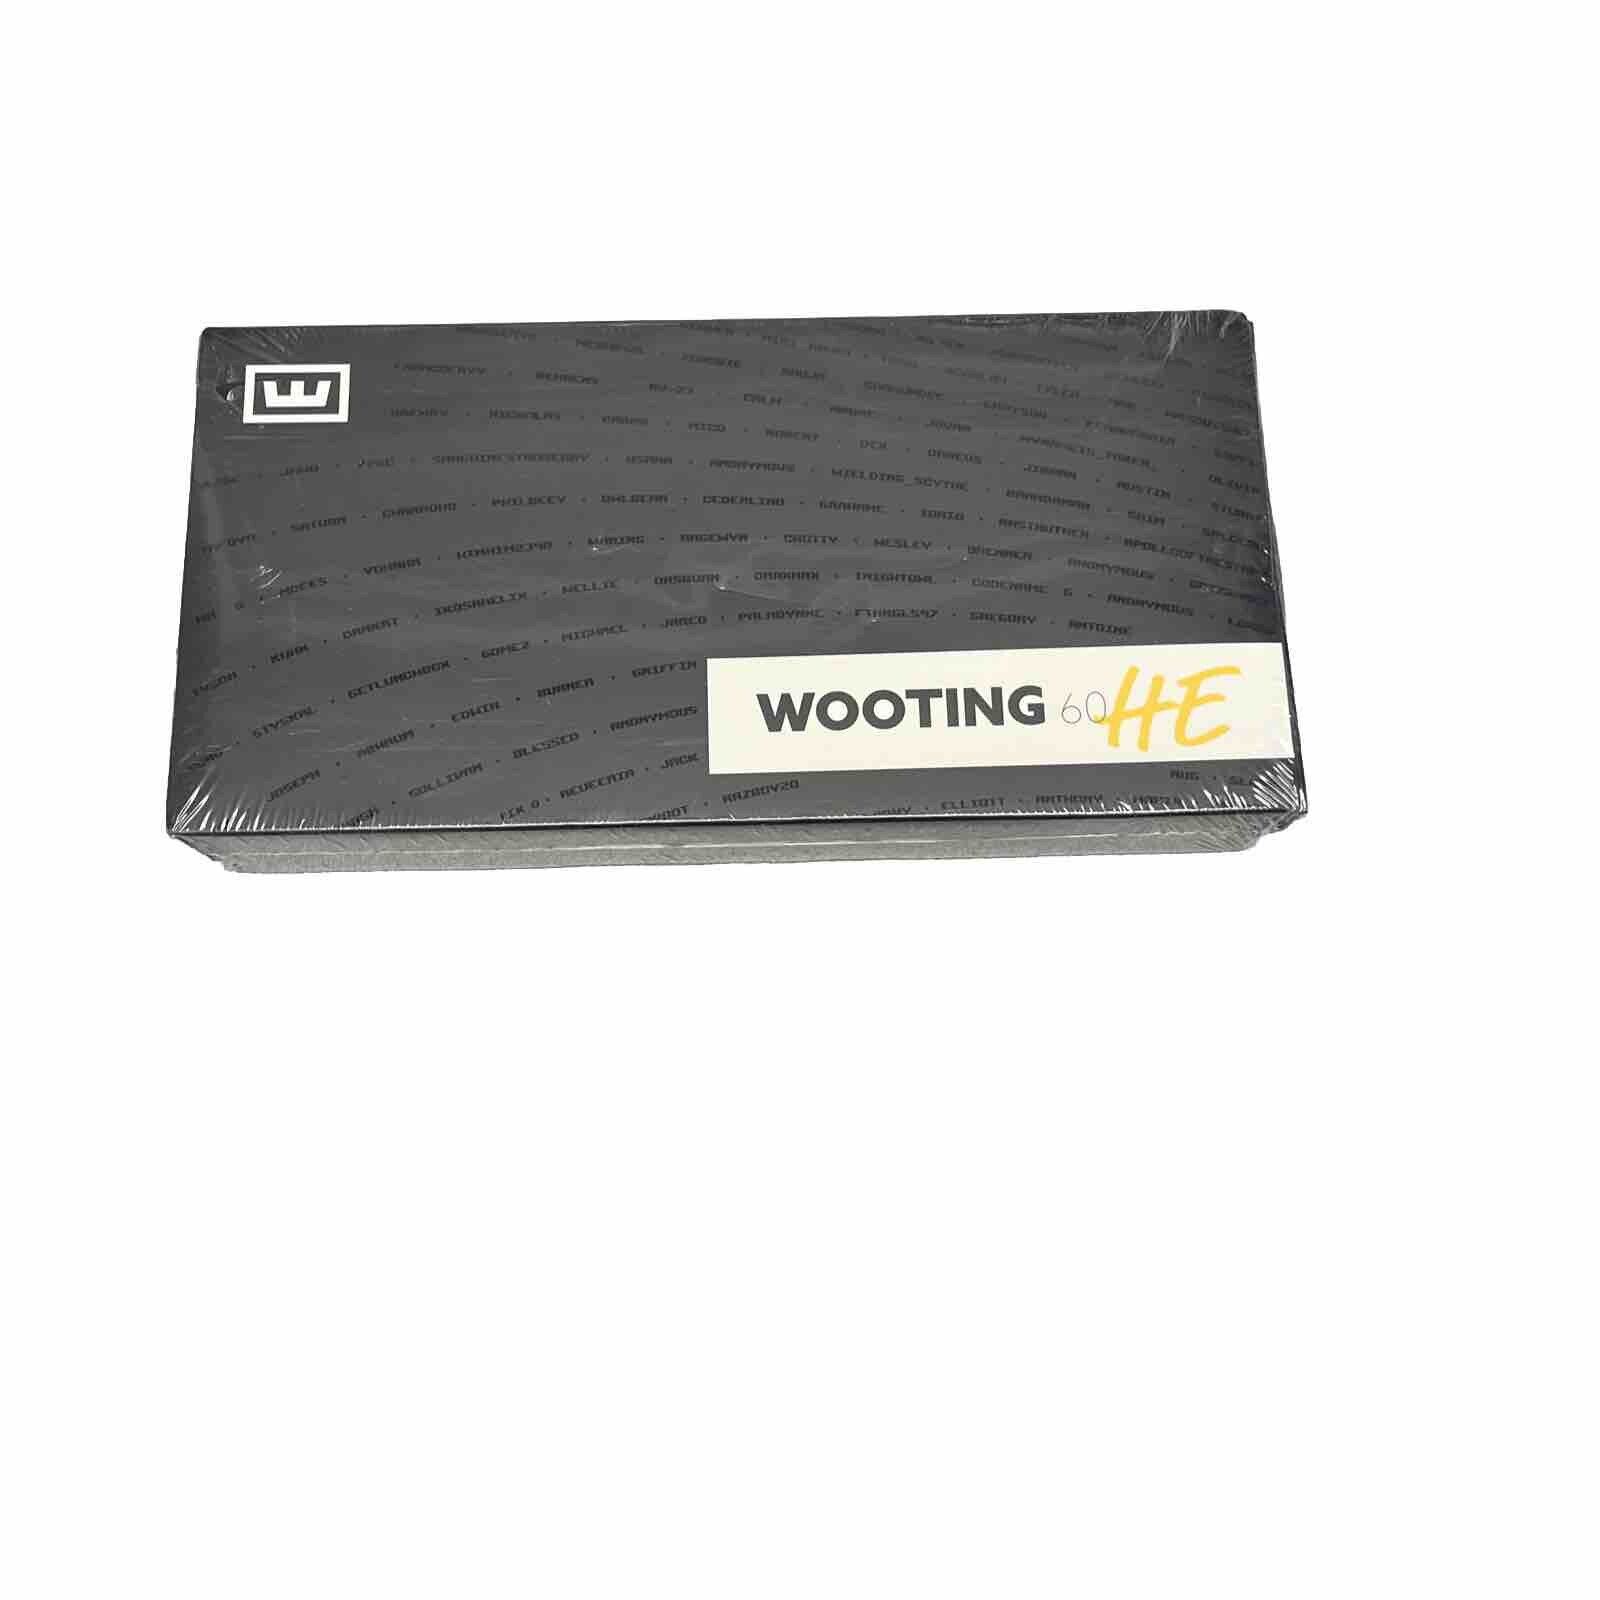 Wooting 60HE 60% RGB Analog Input Gaming Keyboard Black WK3-US2-L60-001